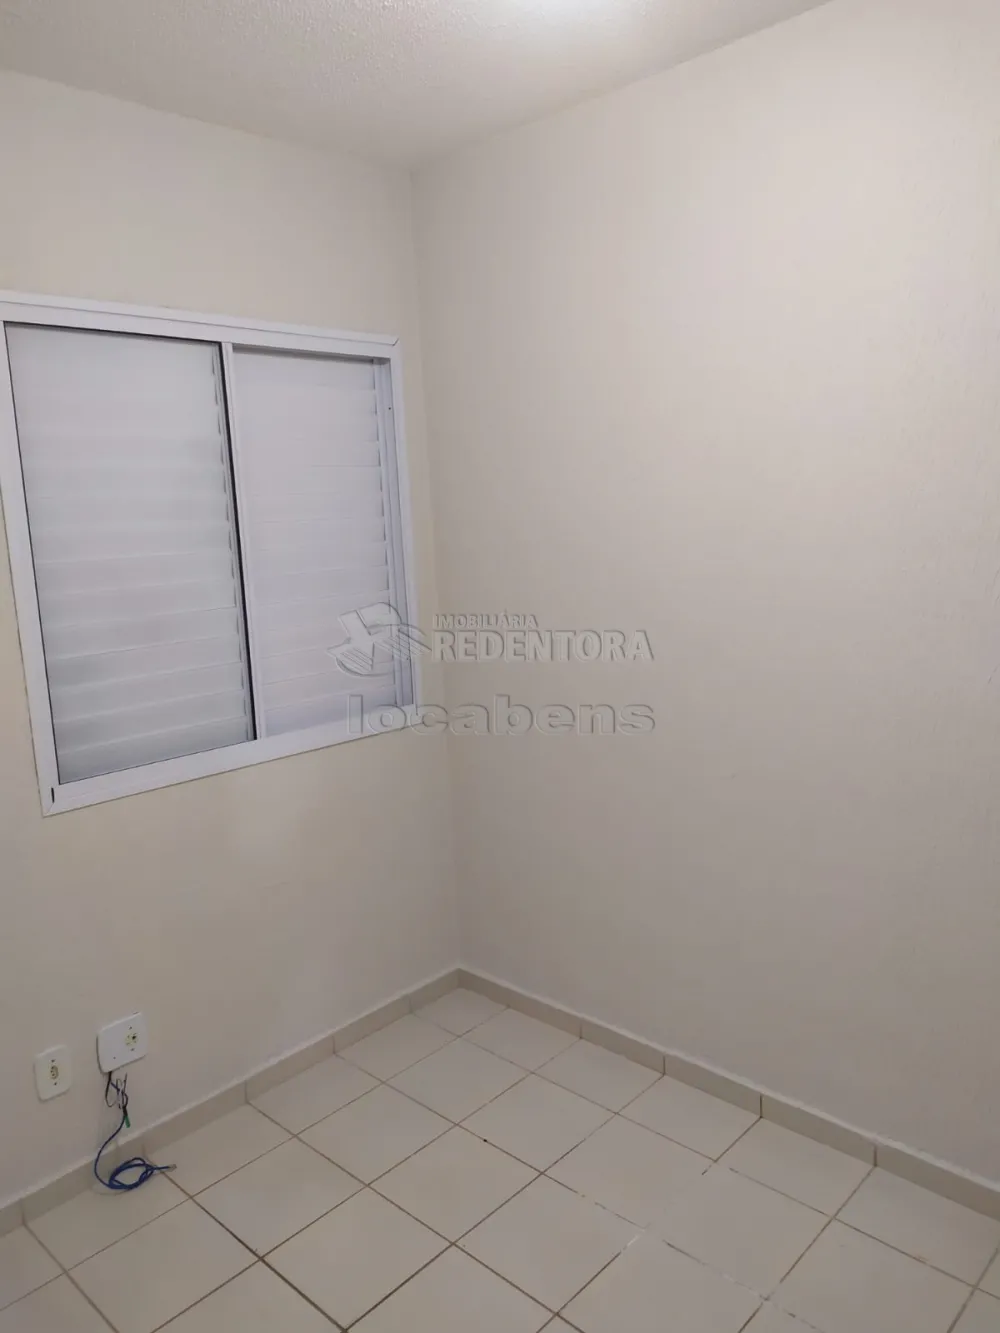 Alugar Casa / Condomínio em São José do Rio Preto R$ 1.000,00 - Foto 10